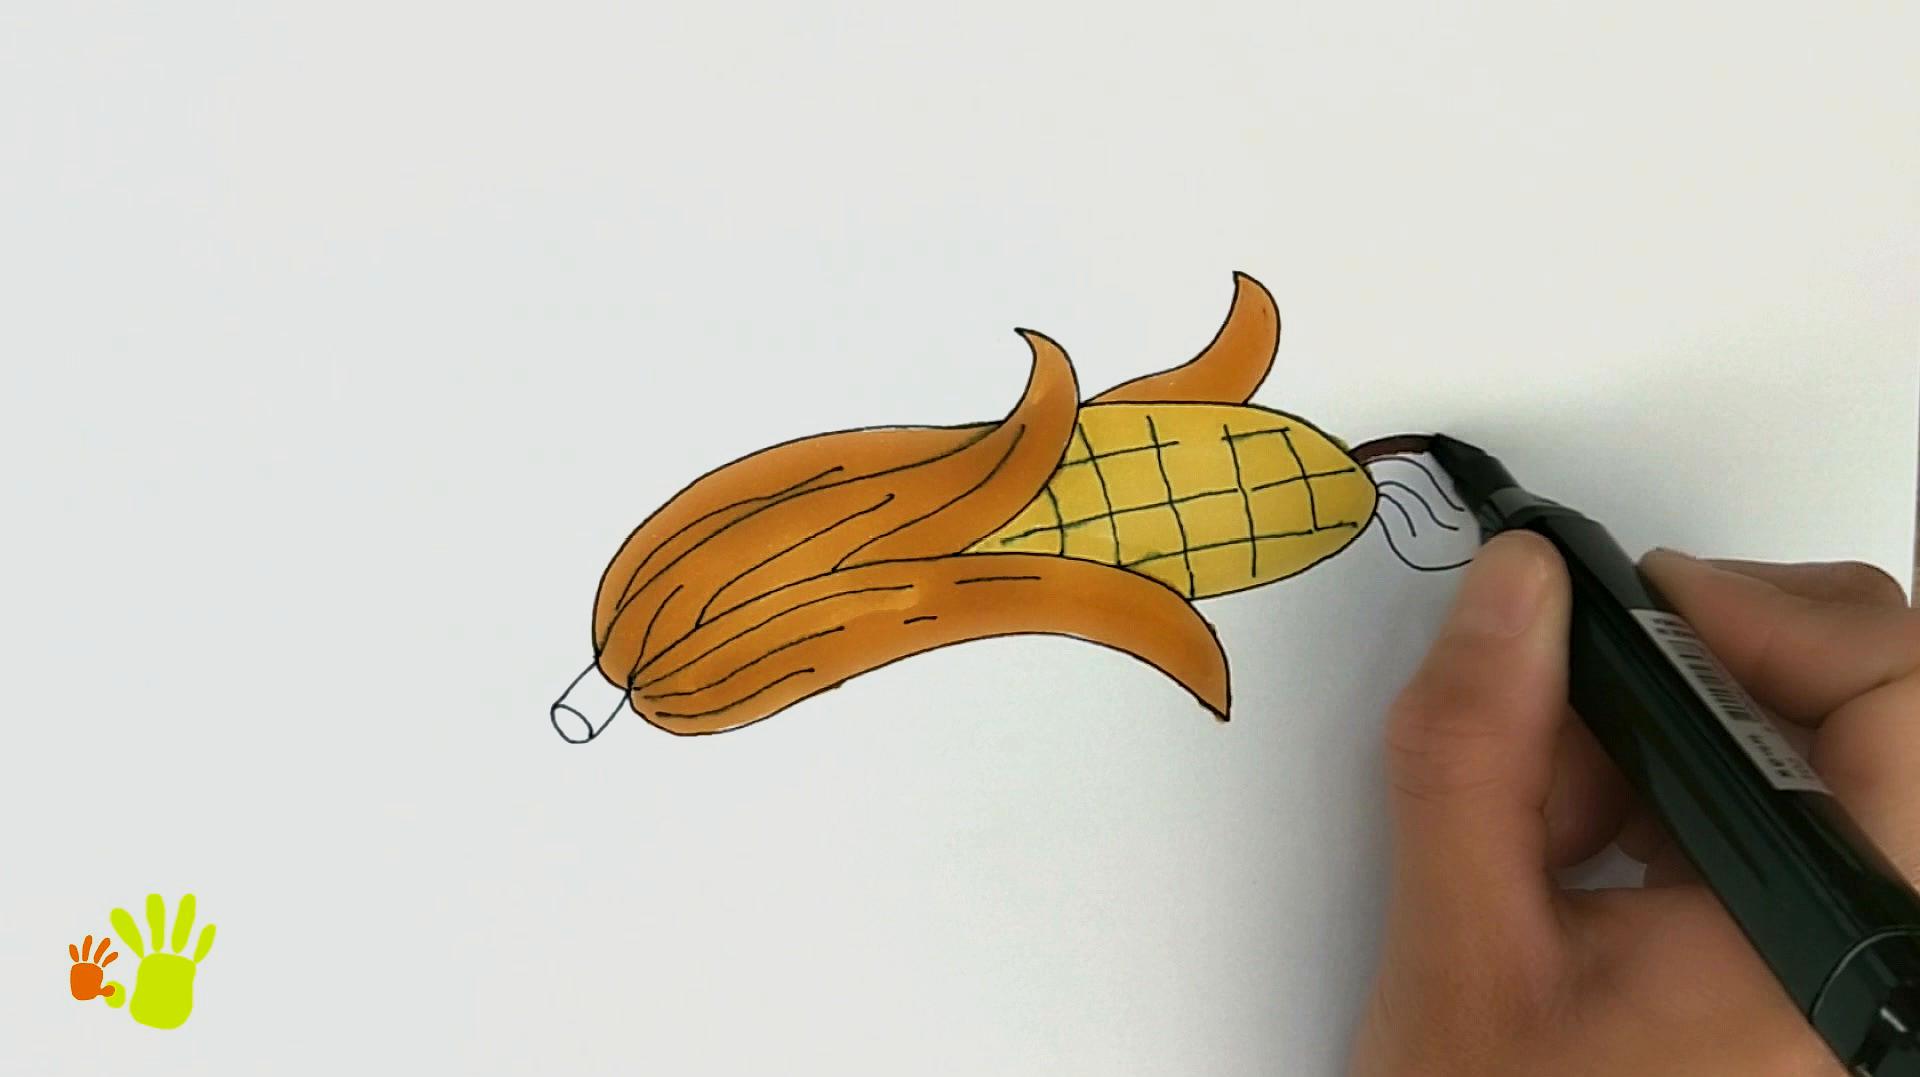 玉米简笔画怎么画